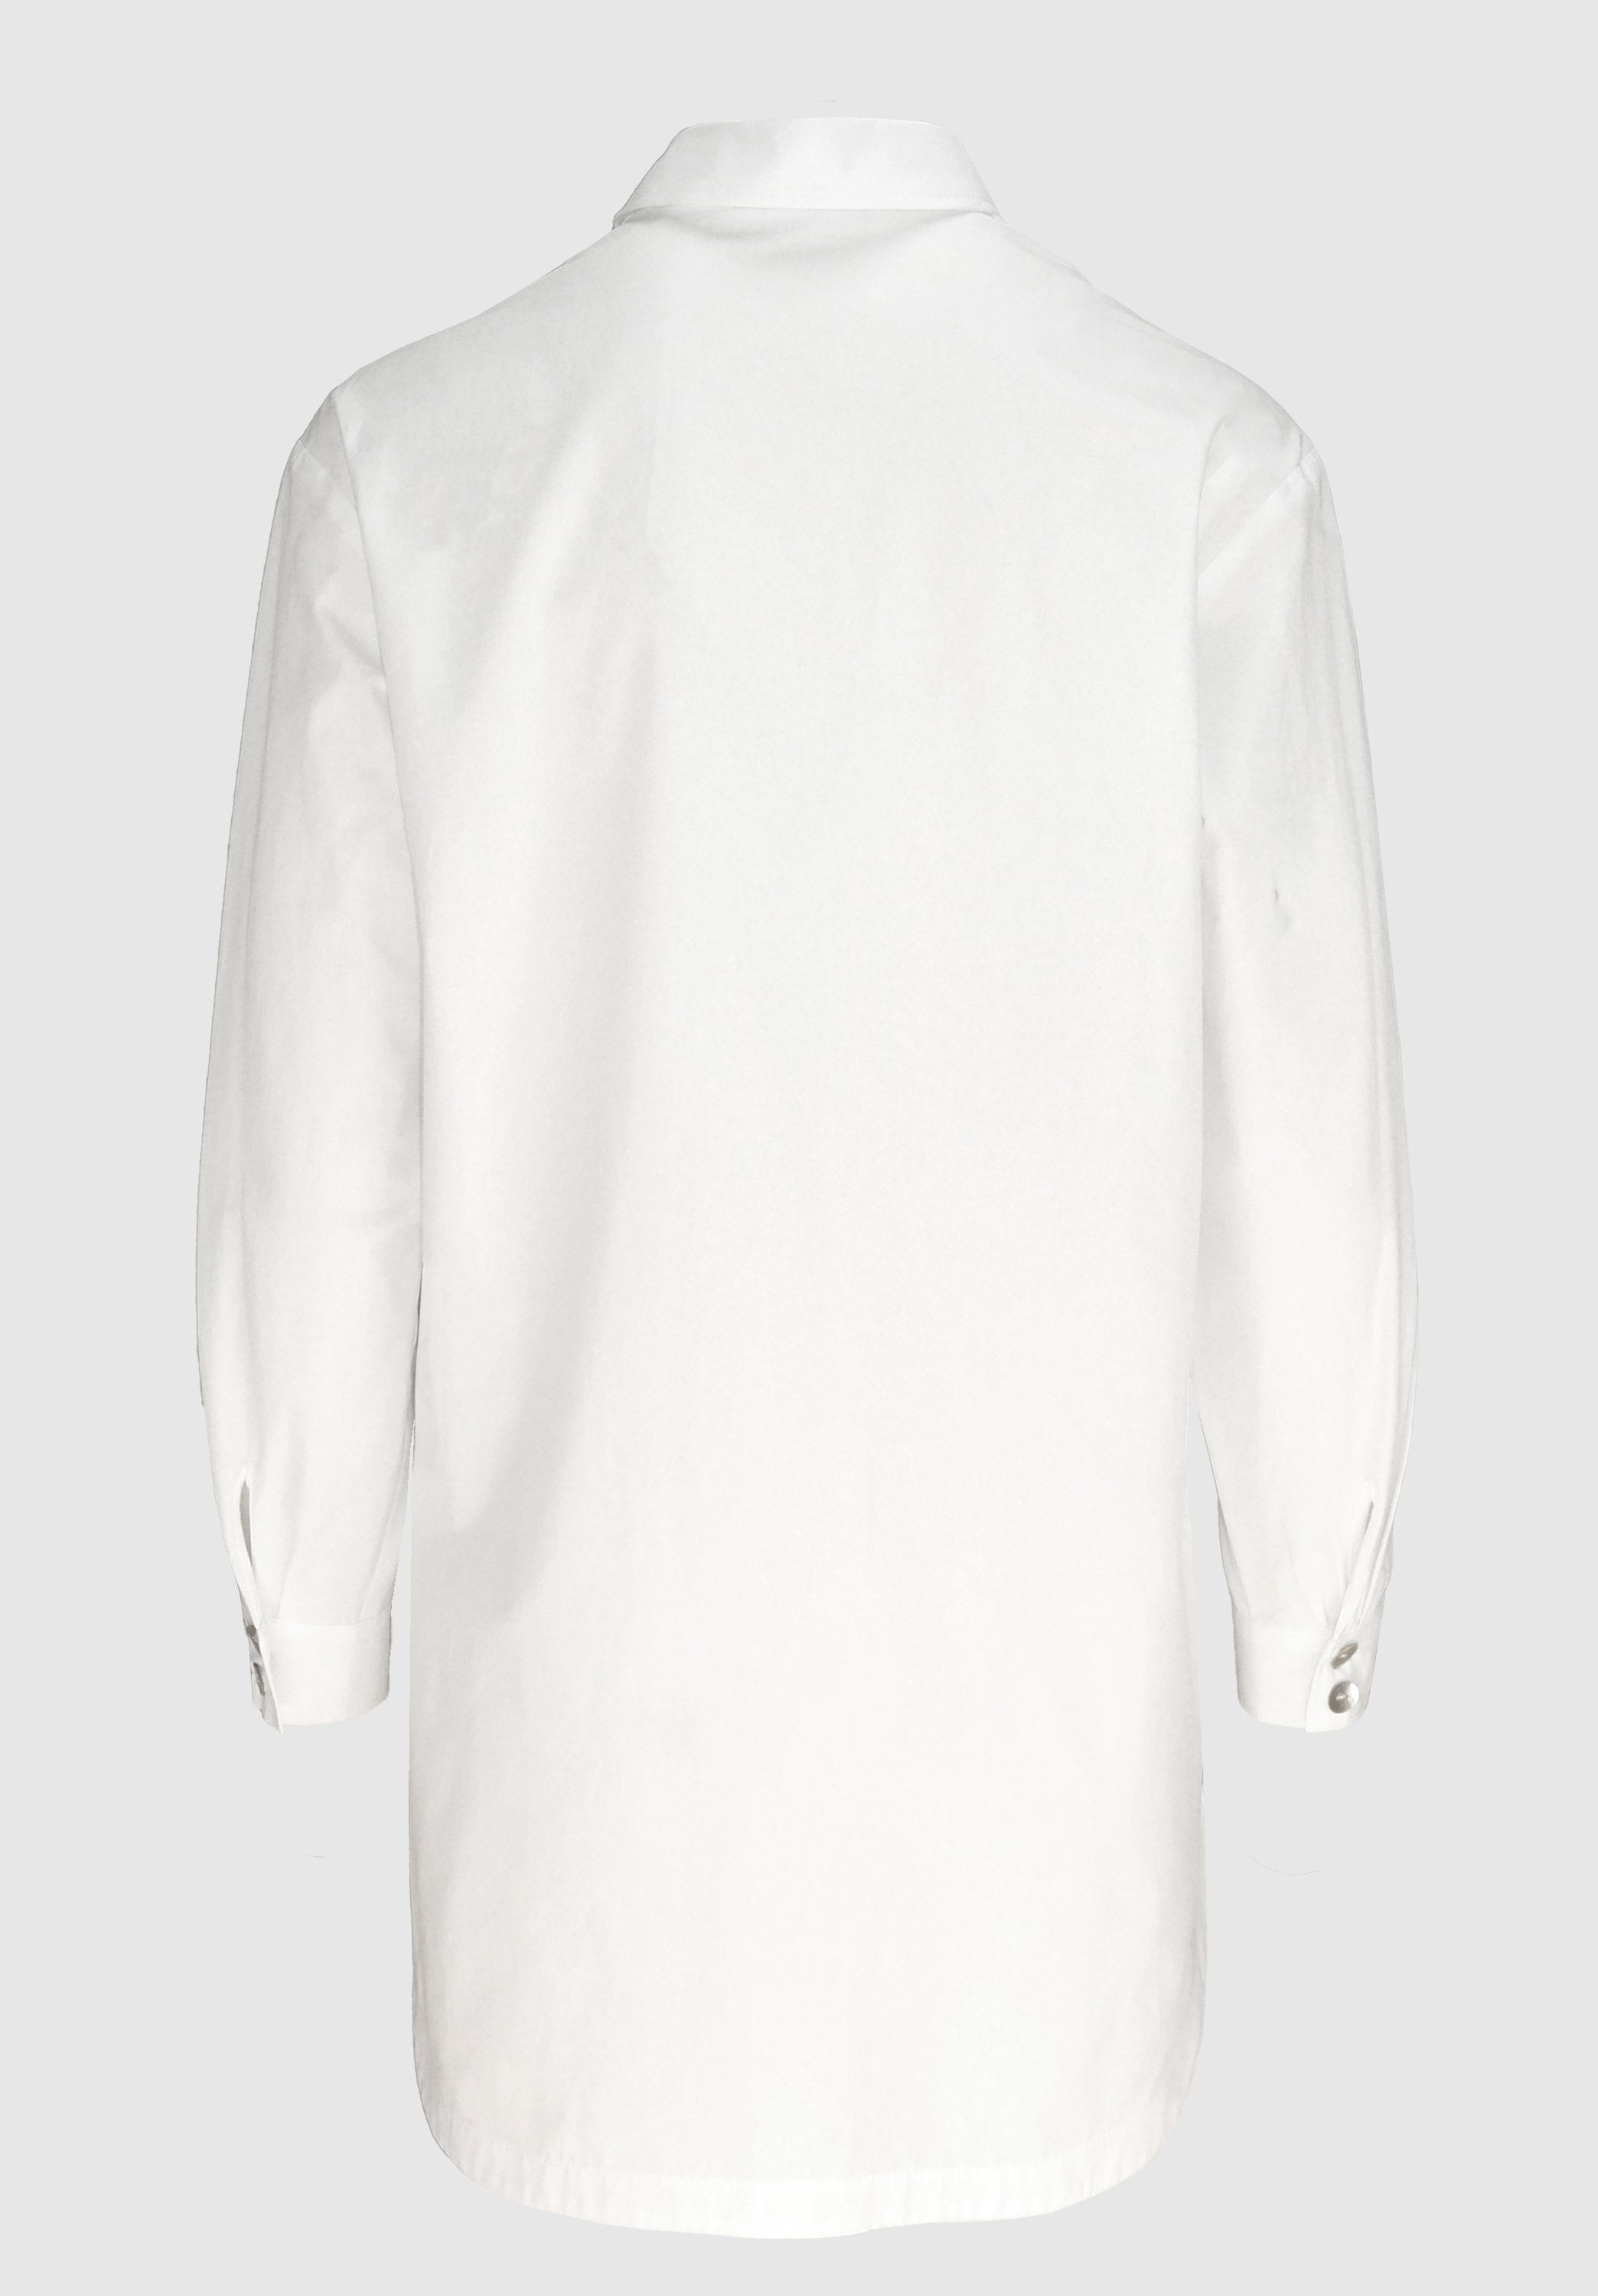 Hemdbluse mit moderner, stylischen längerer white in ADELA Details bianca Form